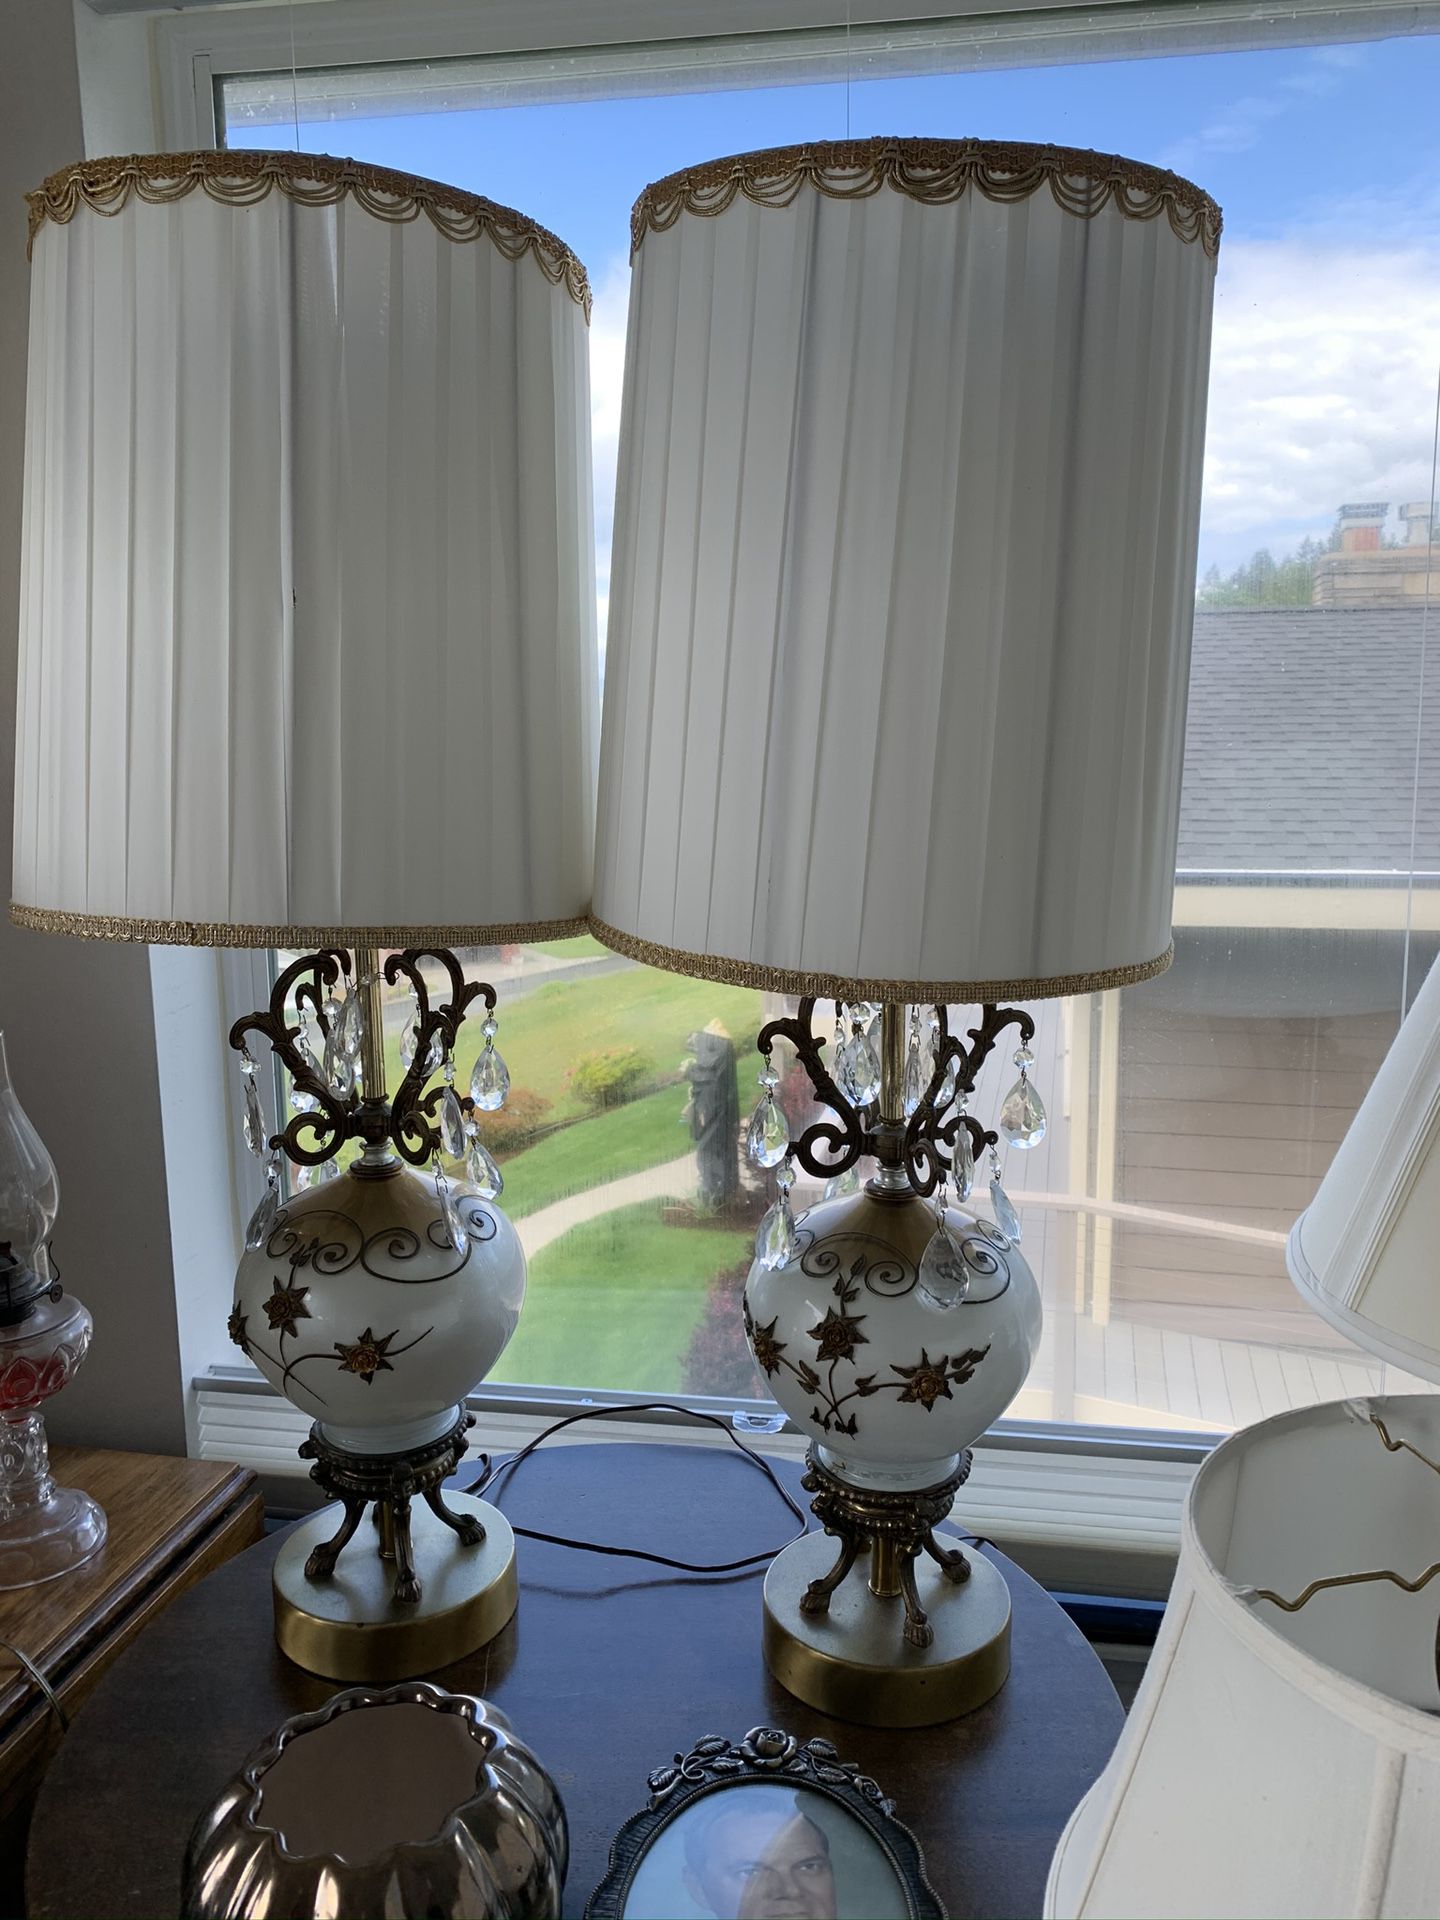 Set of antique lamps